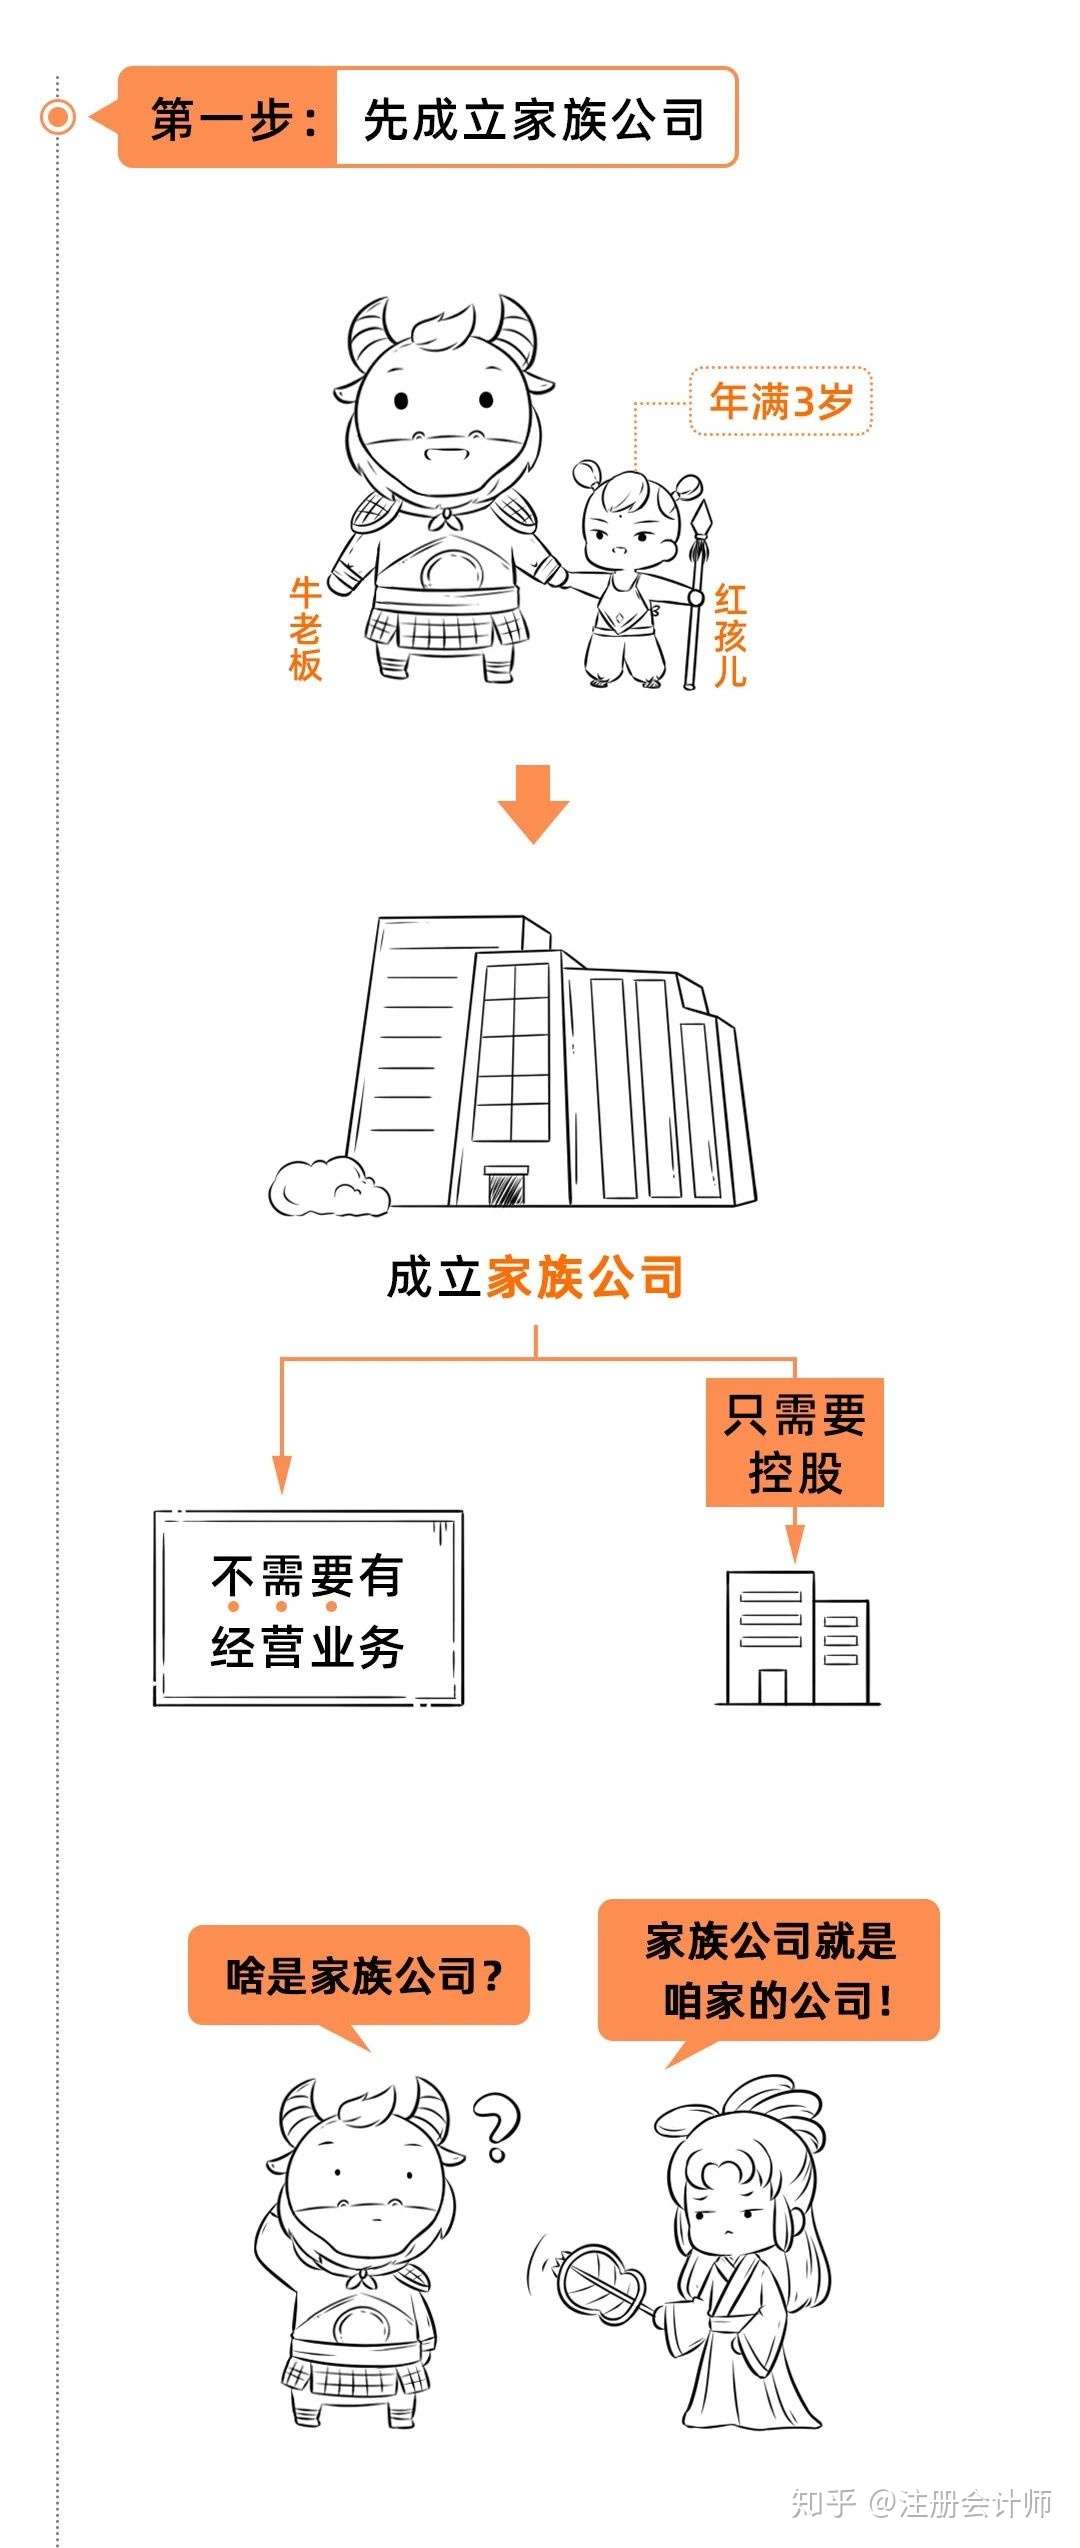 在青岛青岛注册多个公司的老板注意了，这样在青岛区注册公司最节税插图3